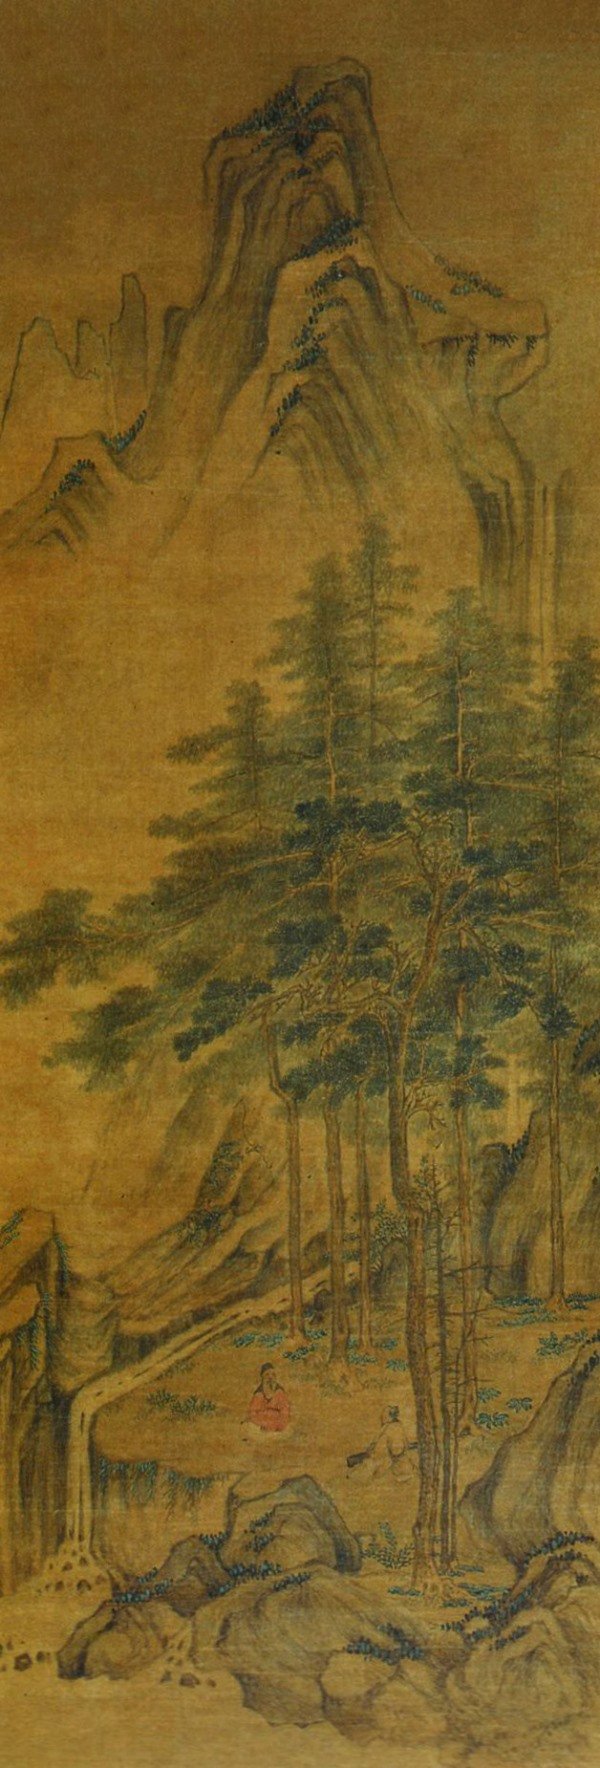 10 nhạc khúc nổi tiếng Trung Hoa cổ đại - Kỳ I: Cao sơn lưu thủy